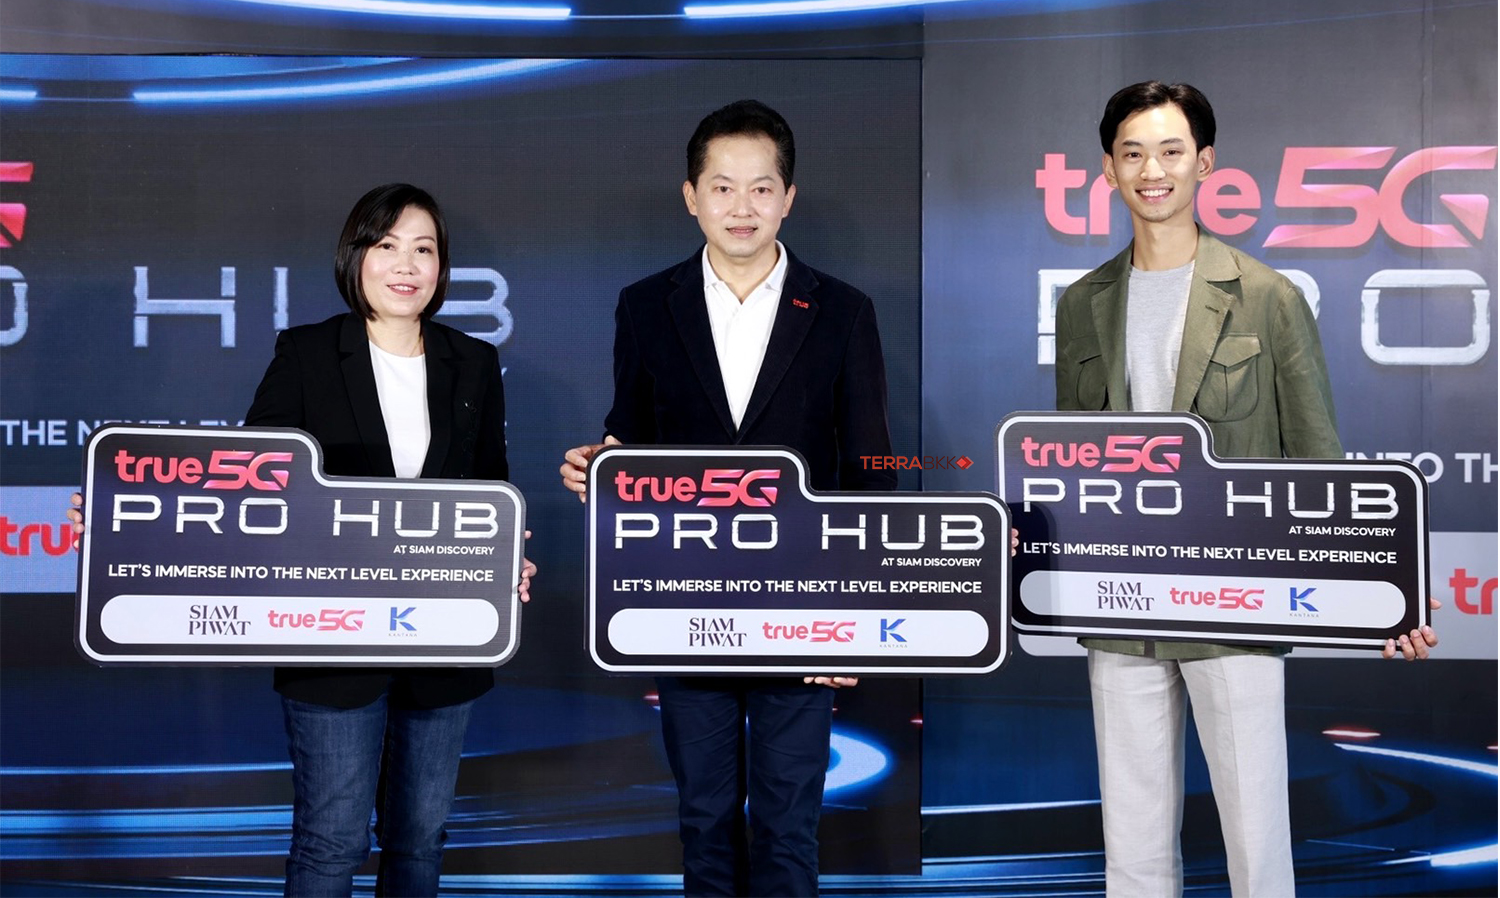 “True 5G PRO HUB” ดิจิทัลฮับสุดล้ำแห่งแรกในเอเชียตะวันออกเฉียงใต้ เตรียมเปิดให้คอเกมส์ใช้งานธ.ค.นี้